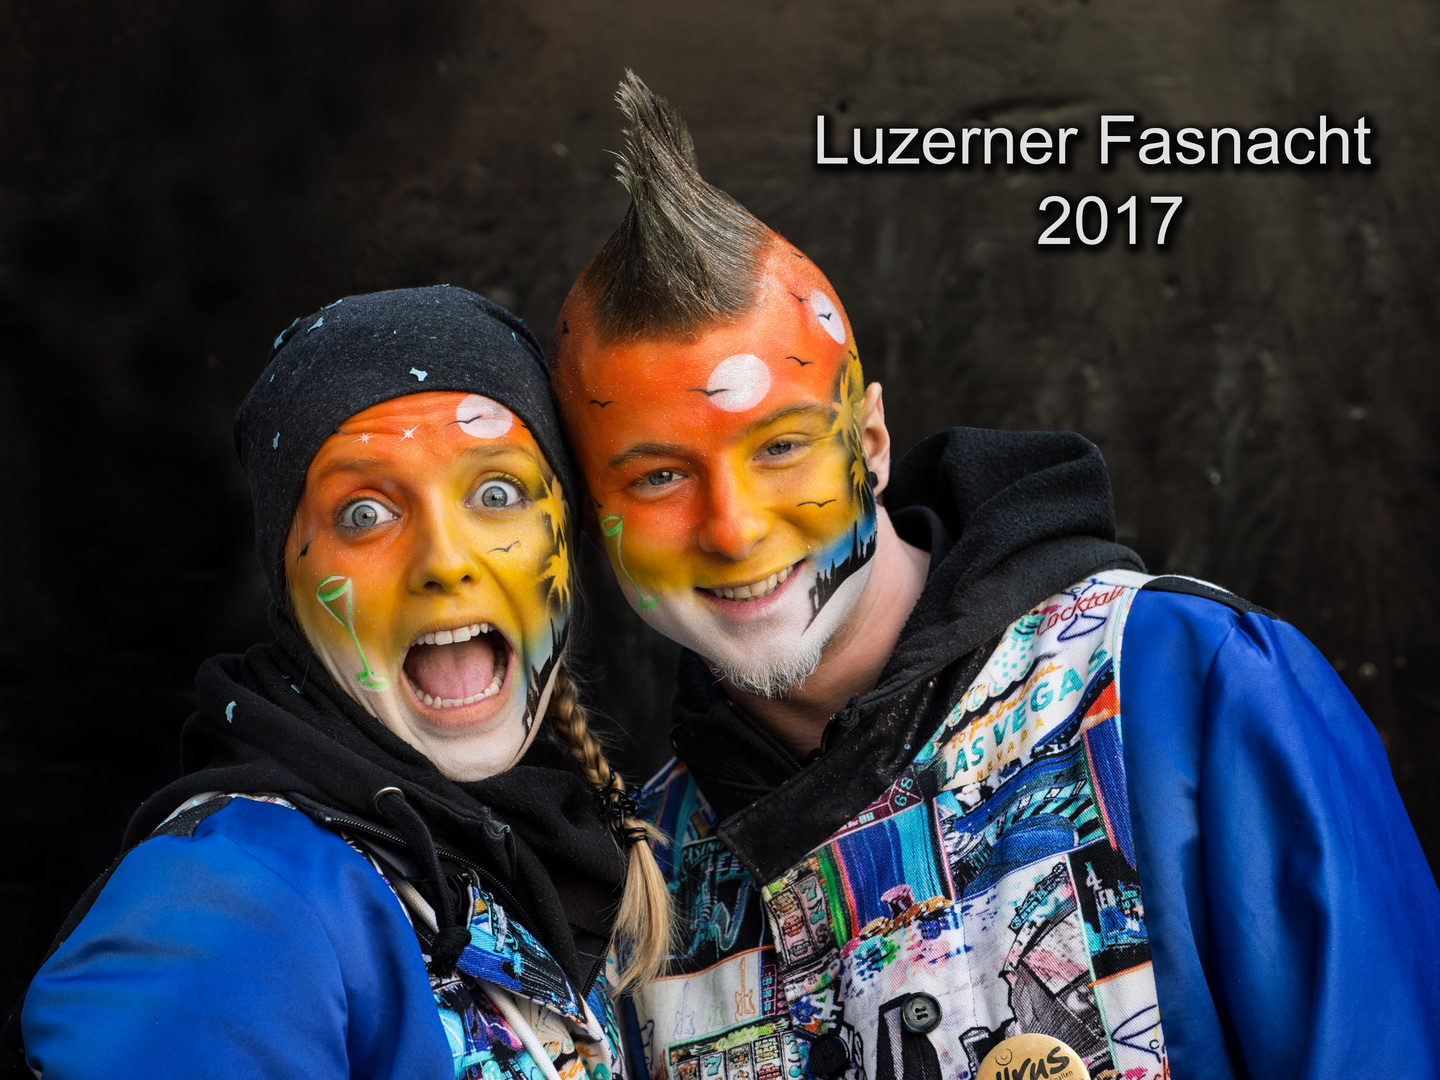 Luzerner Fasnacht 2017